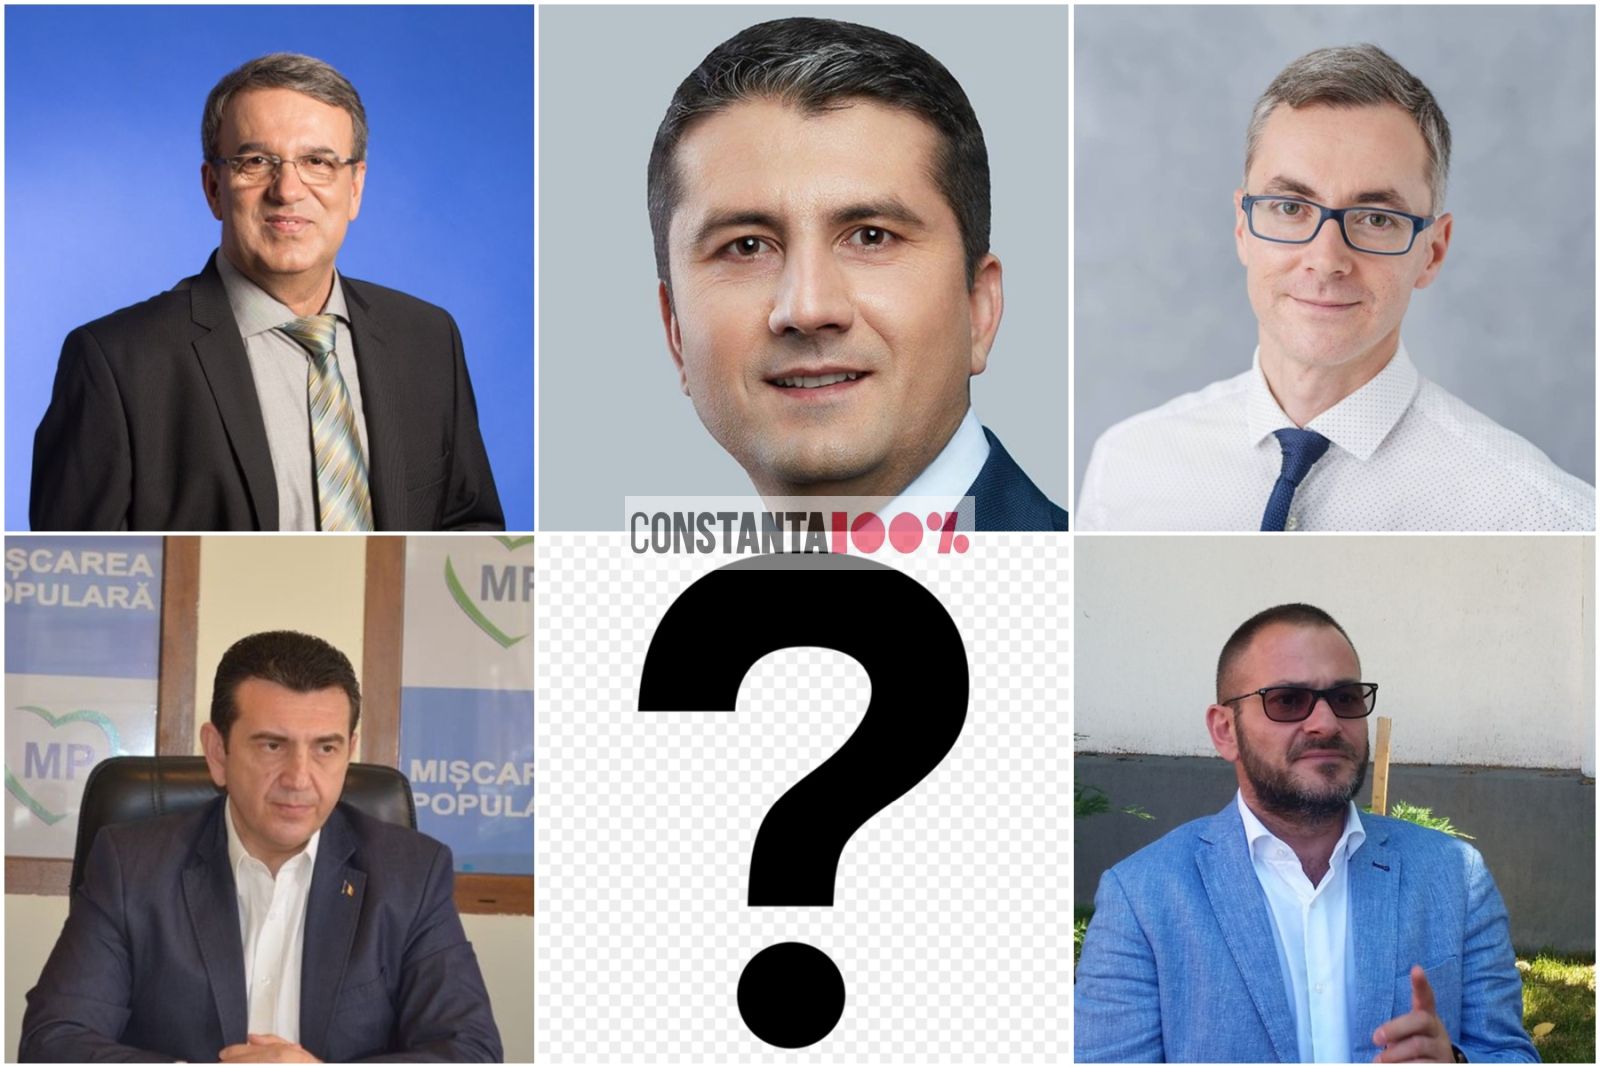 Cu cine ar vota cititorii Constanța 100%, dacă mâine ar fi alegeri la Primăria Constanța